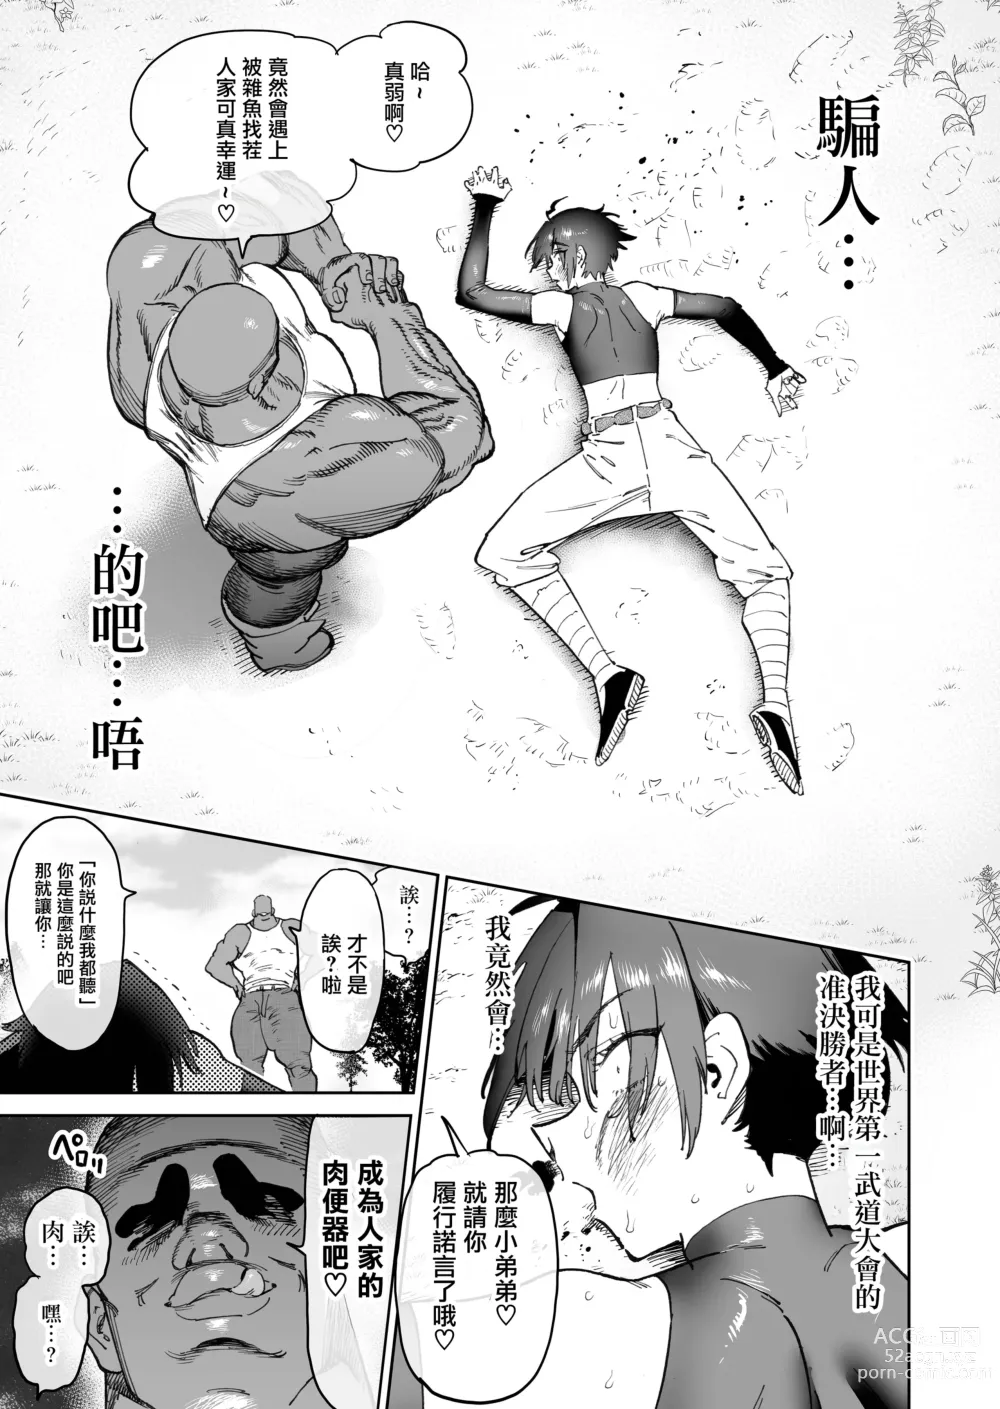 Page 9 of doujinshi 发誓要变强而分开的战友二人两年后变为母猪肉便器再会的故事